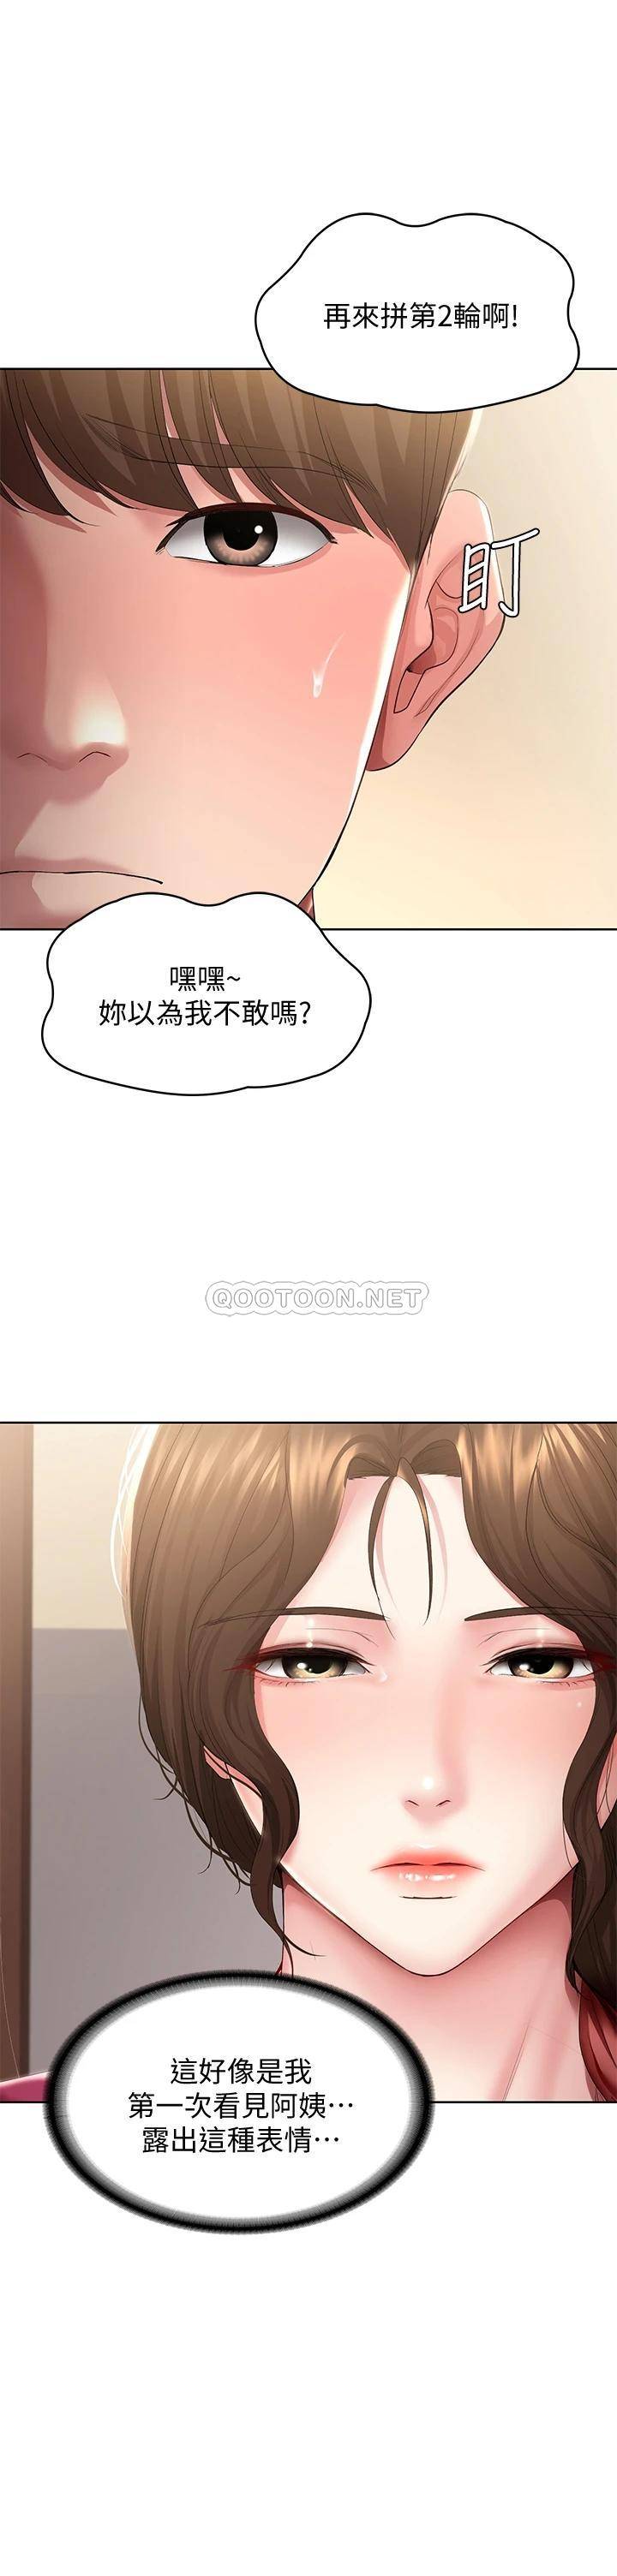 韩国污漫画 寄宿日記 第88话嫉妒女儿的美静 15